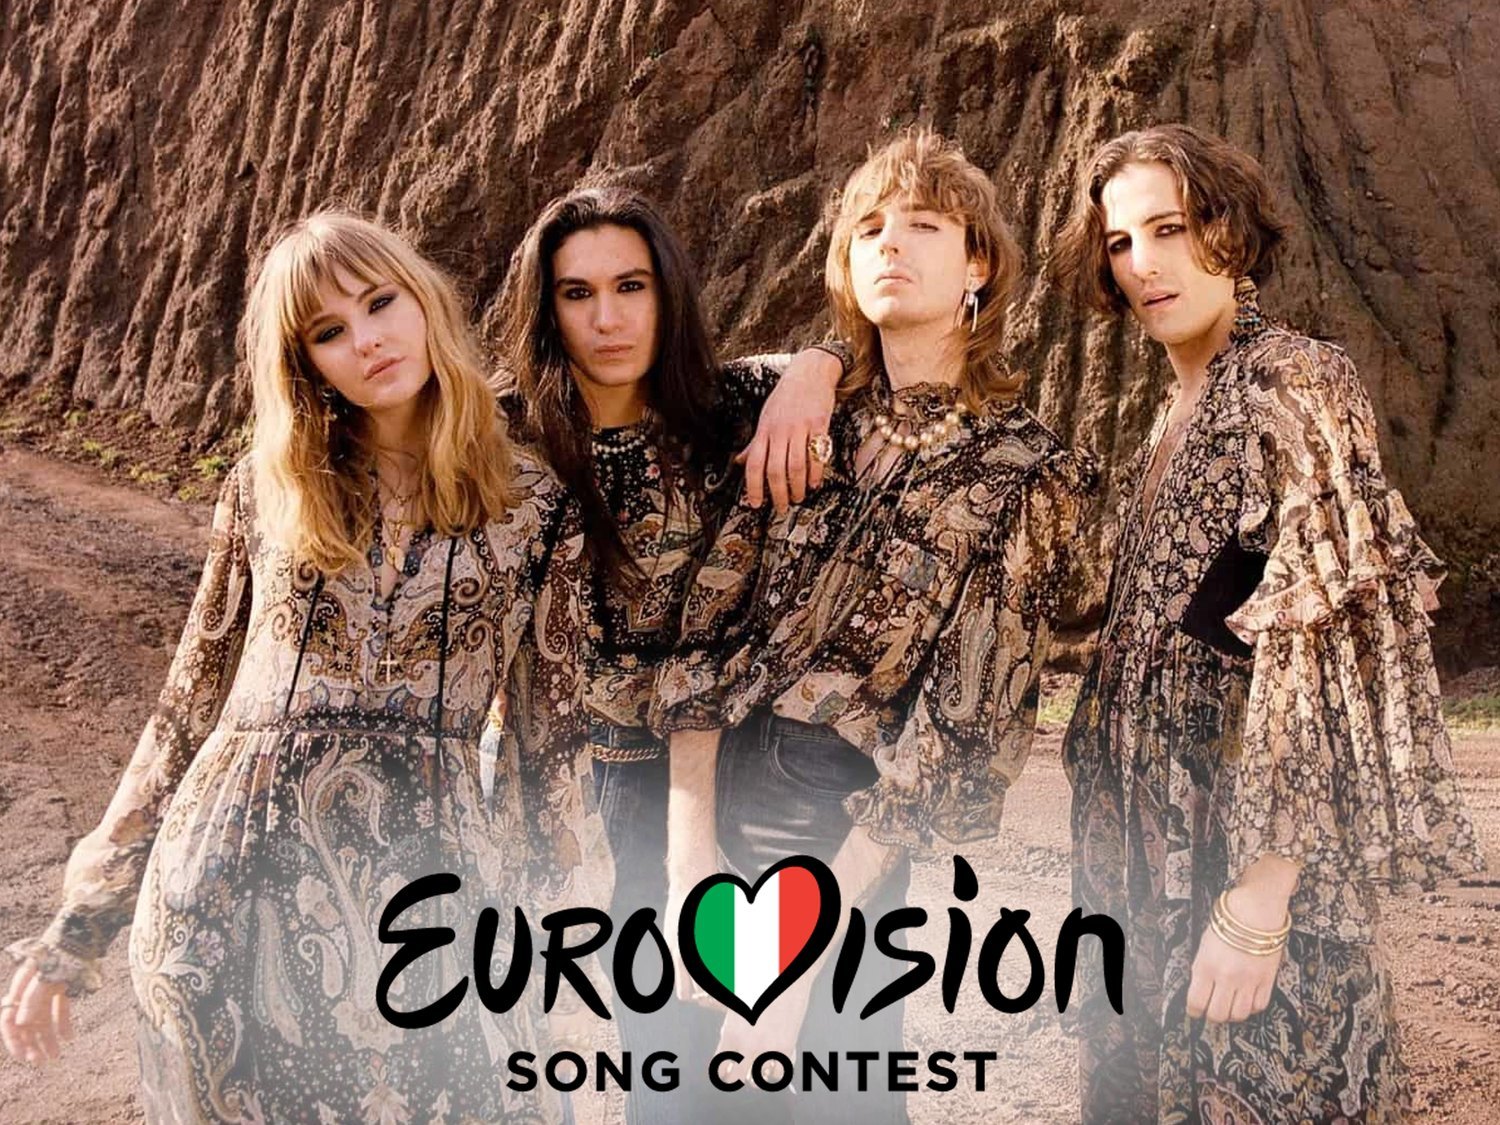 Maneskin da la sorpresa en Sanremo y representará a Italia en Eurovisión 2021 con 'Zitti e buoni'